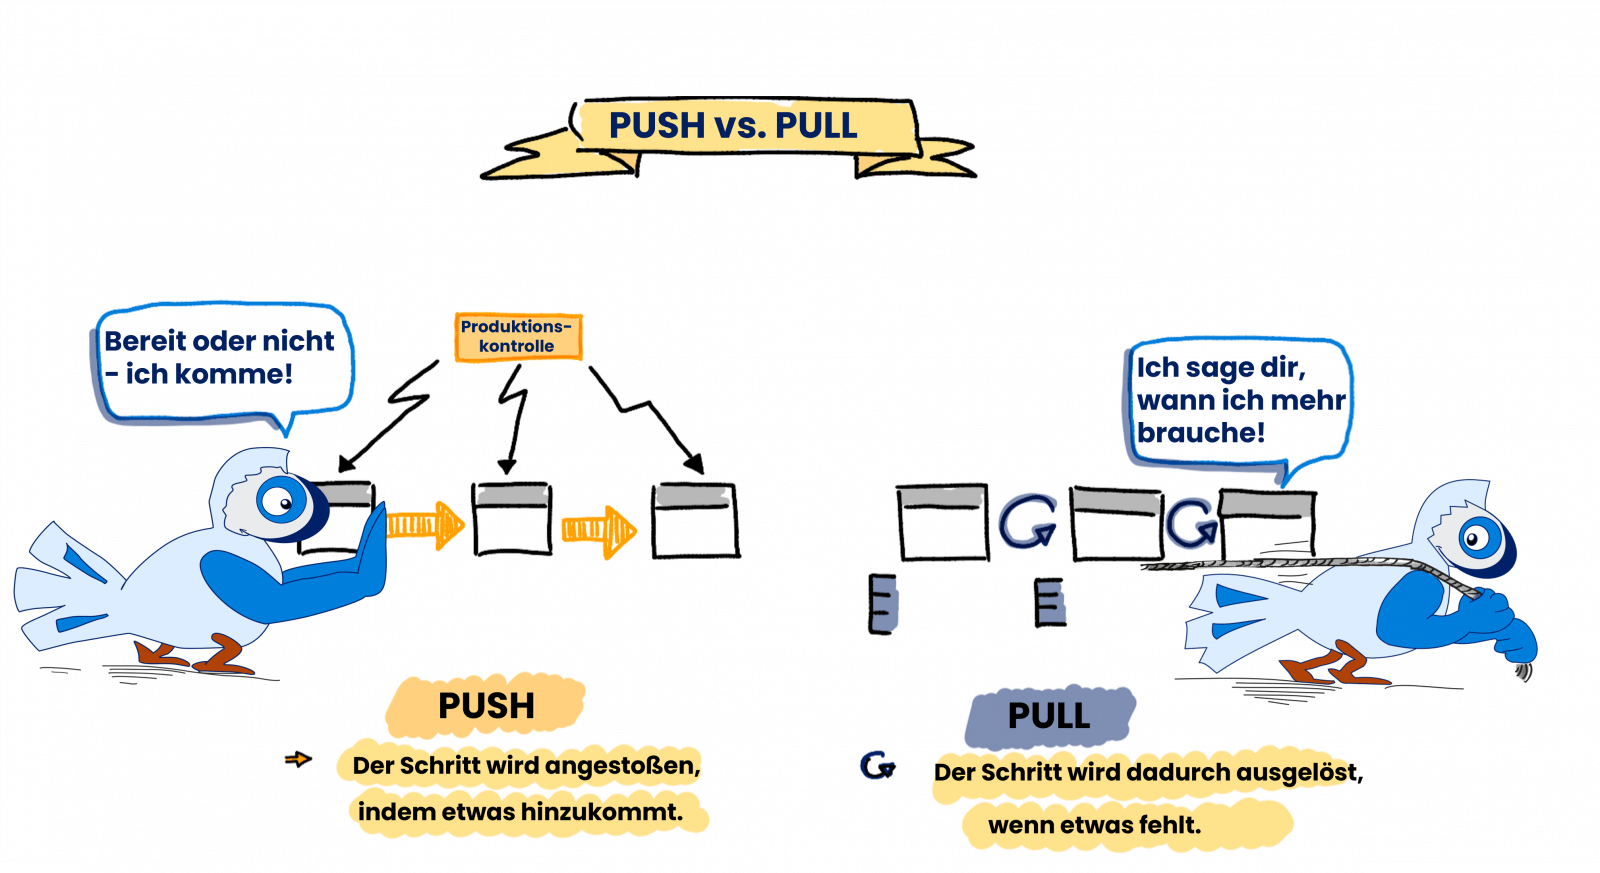 Was ist Pull? Was ist Push? Wie funktioniert das? Einfache Erklärung und lustige Beispiele. 